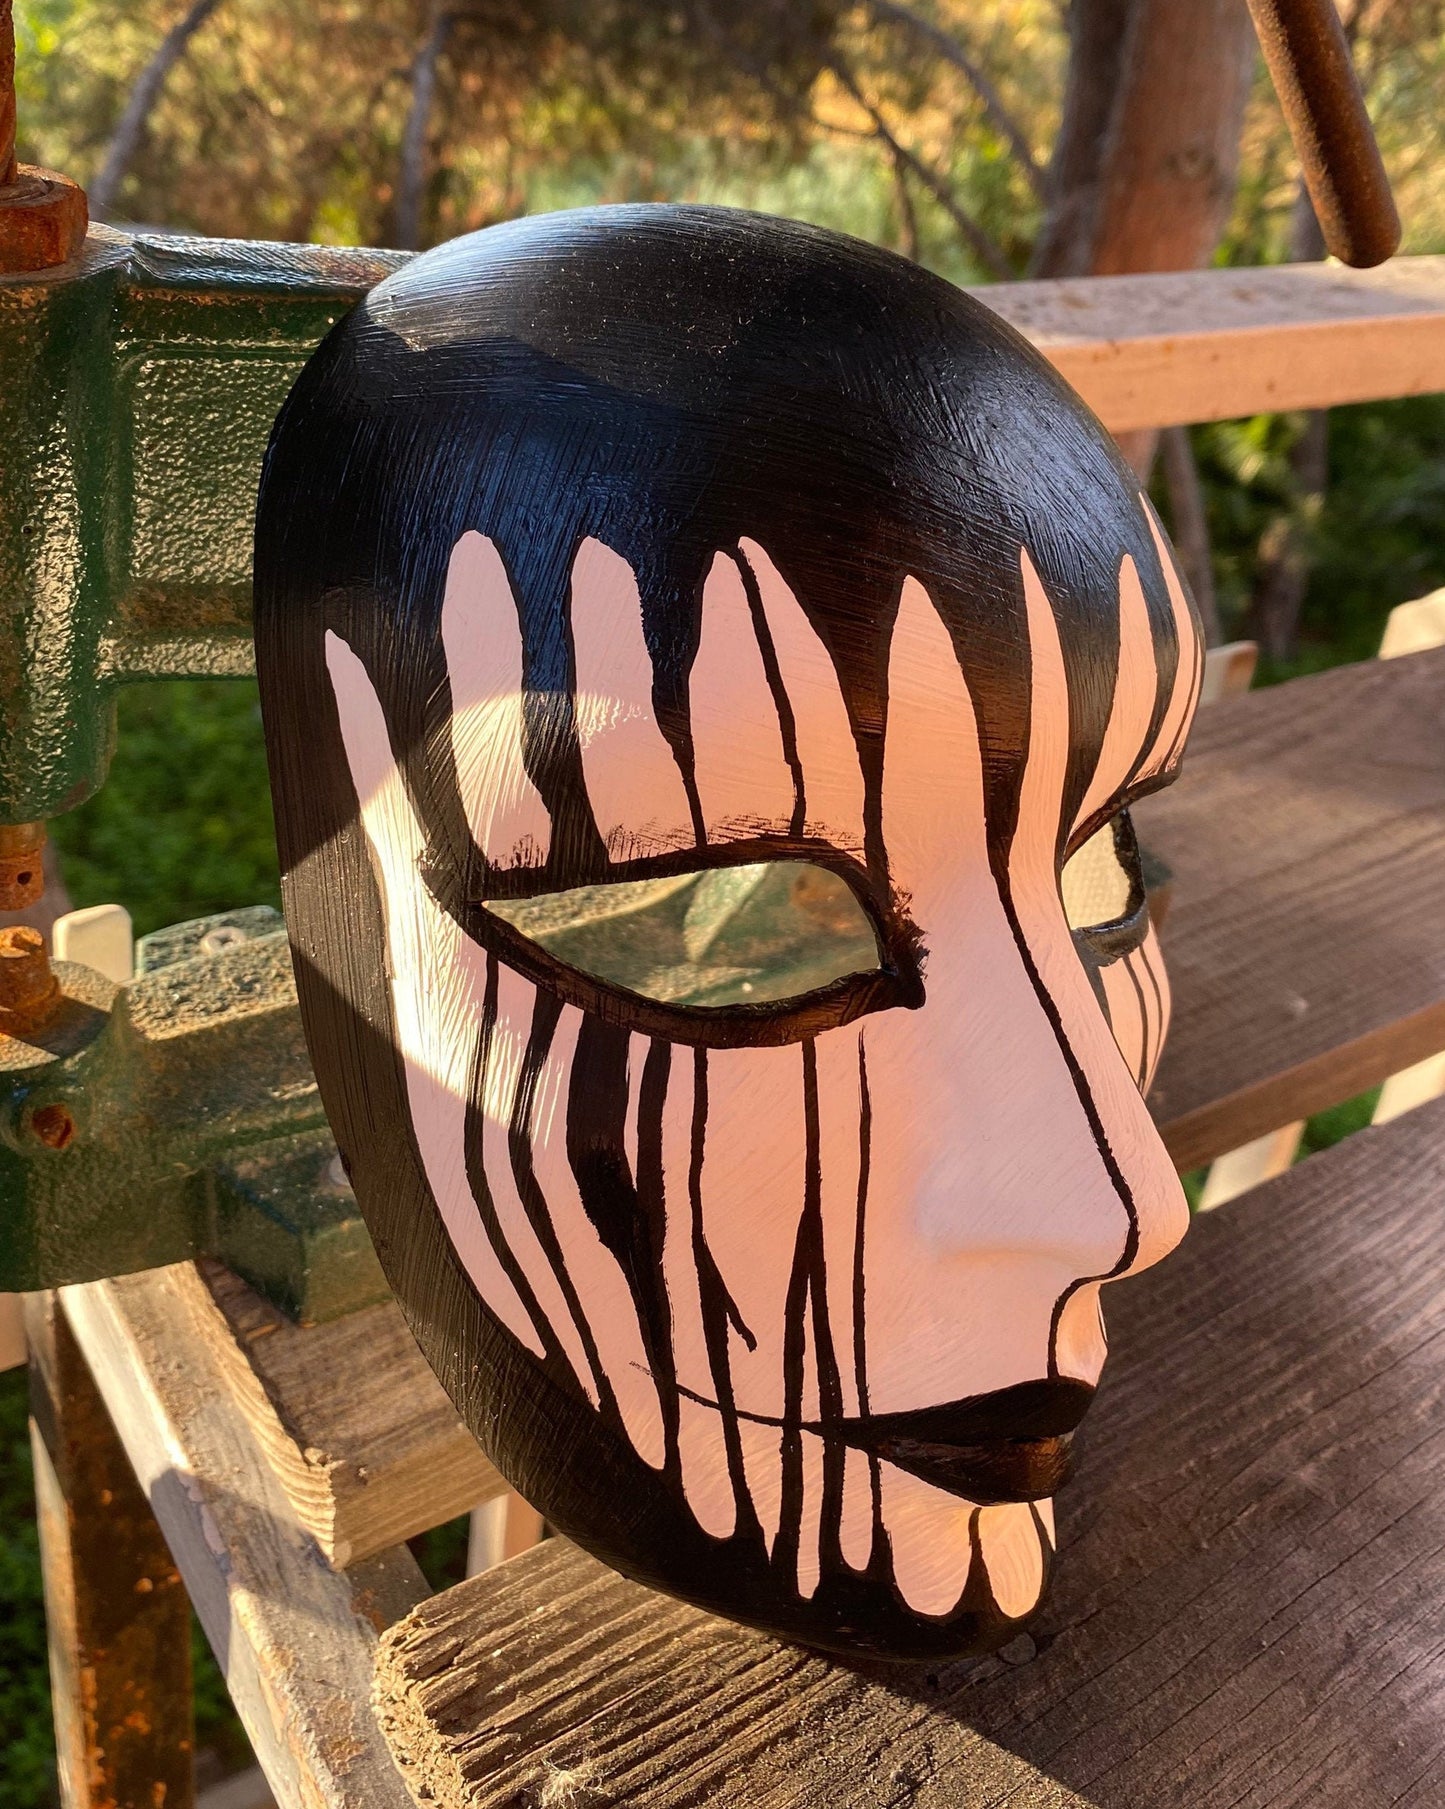 EDICIÓN LIMITADA Día de Los Muertos Máscara del Día de la Muerte Italia Modelos de Halloween americanos Máscara muerta Máscara de Calavera